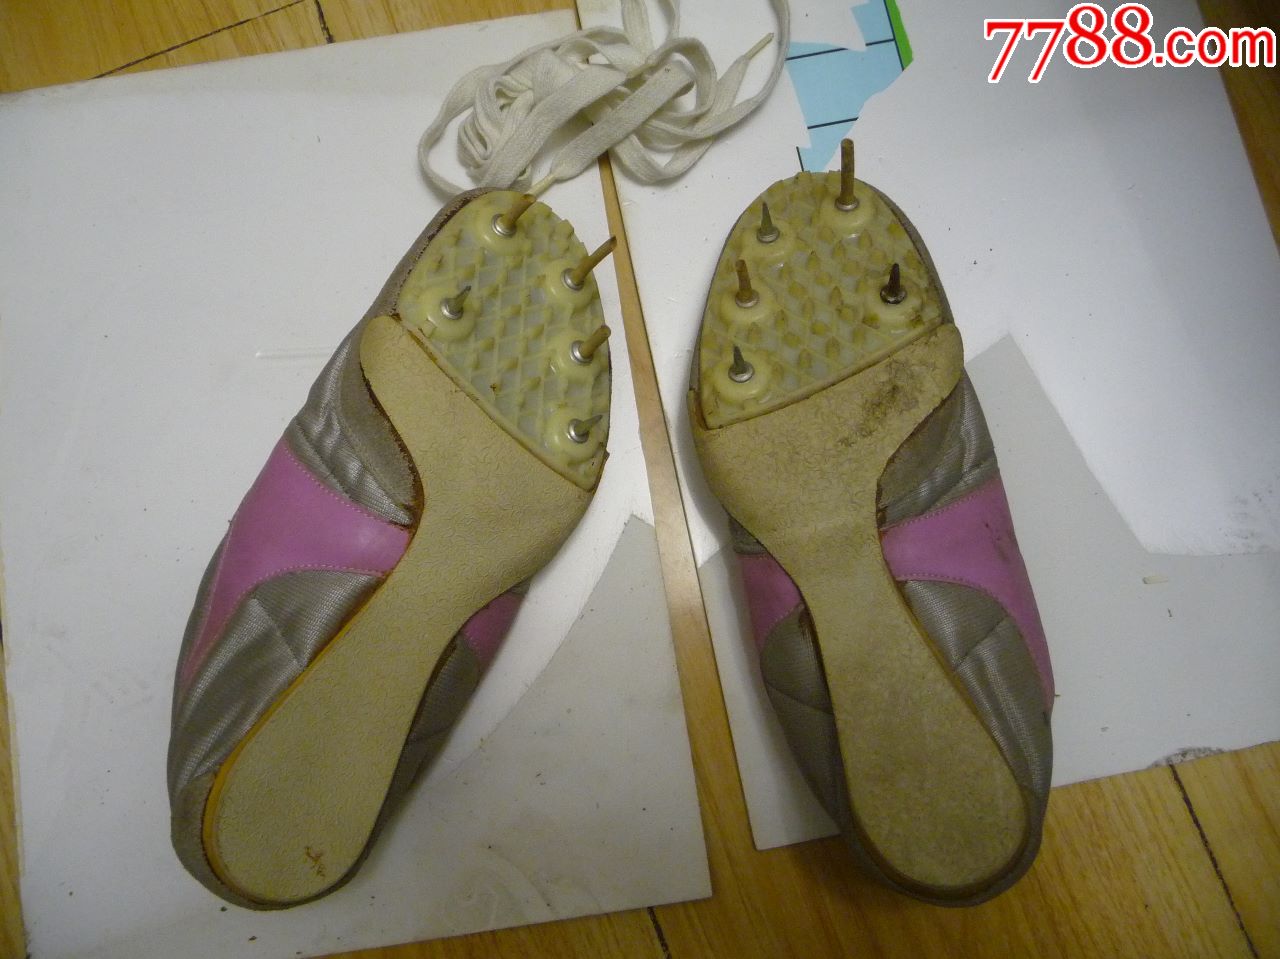 古董运动鞋收藏上世纪八九十年代的火炬牌钉子鞋41码无工具未穿库存货